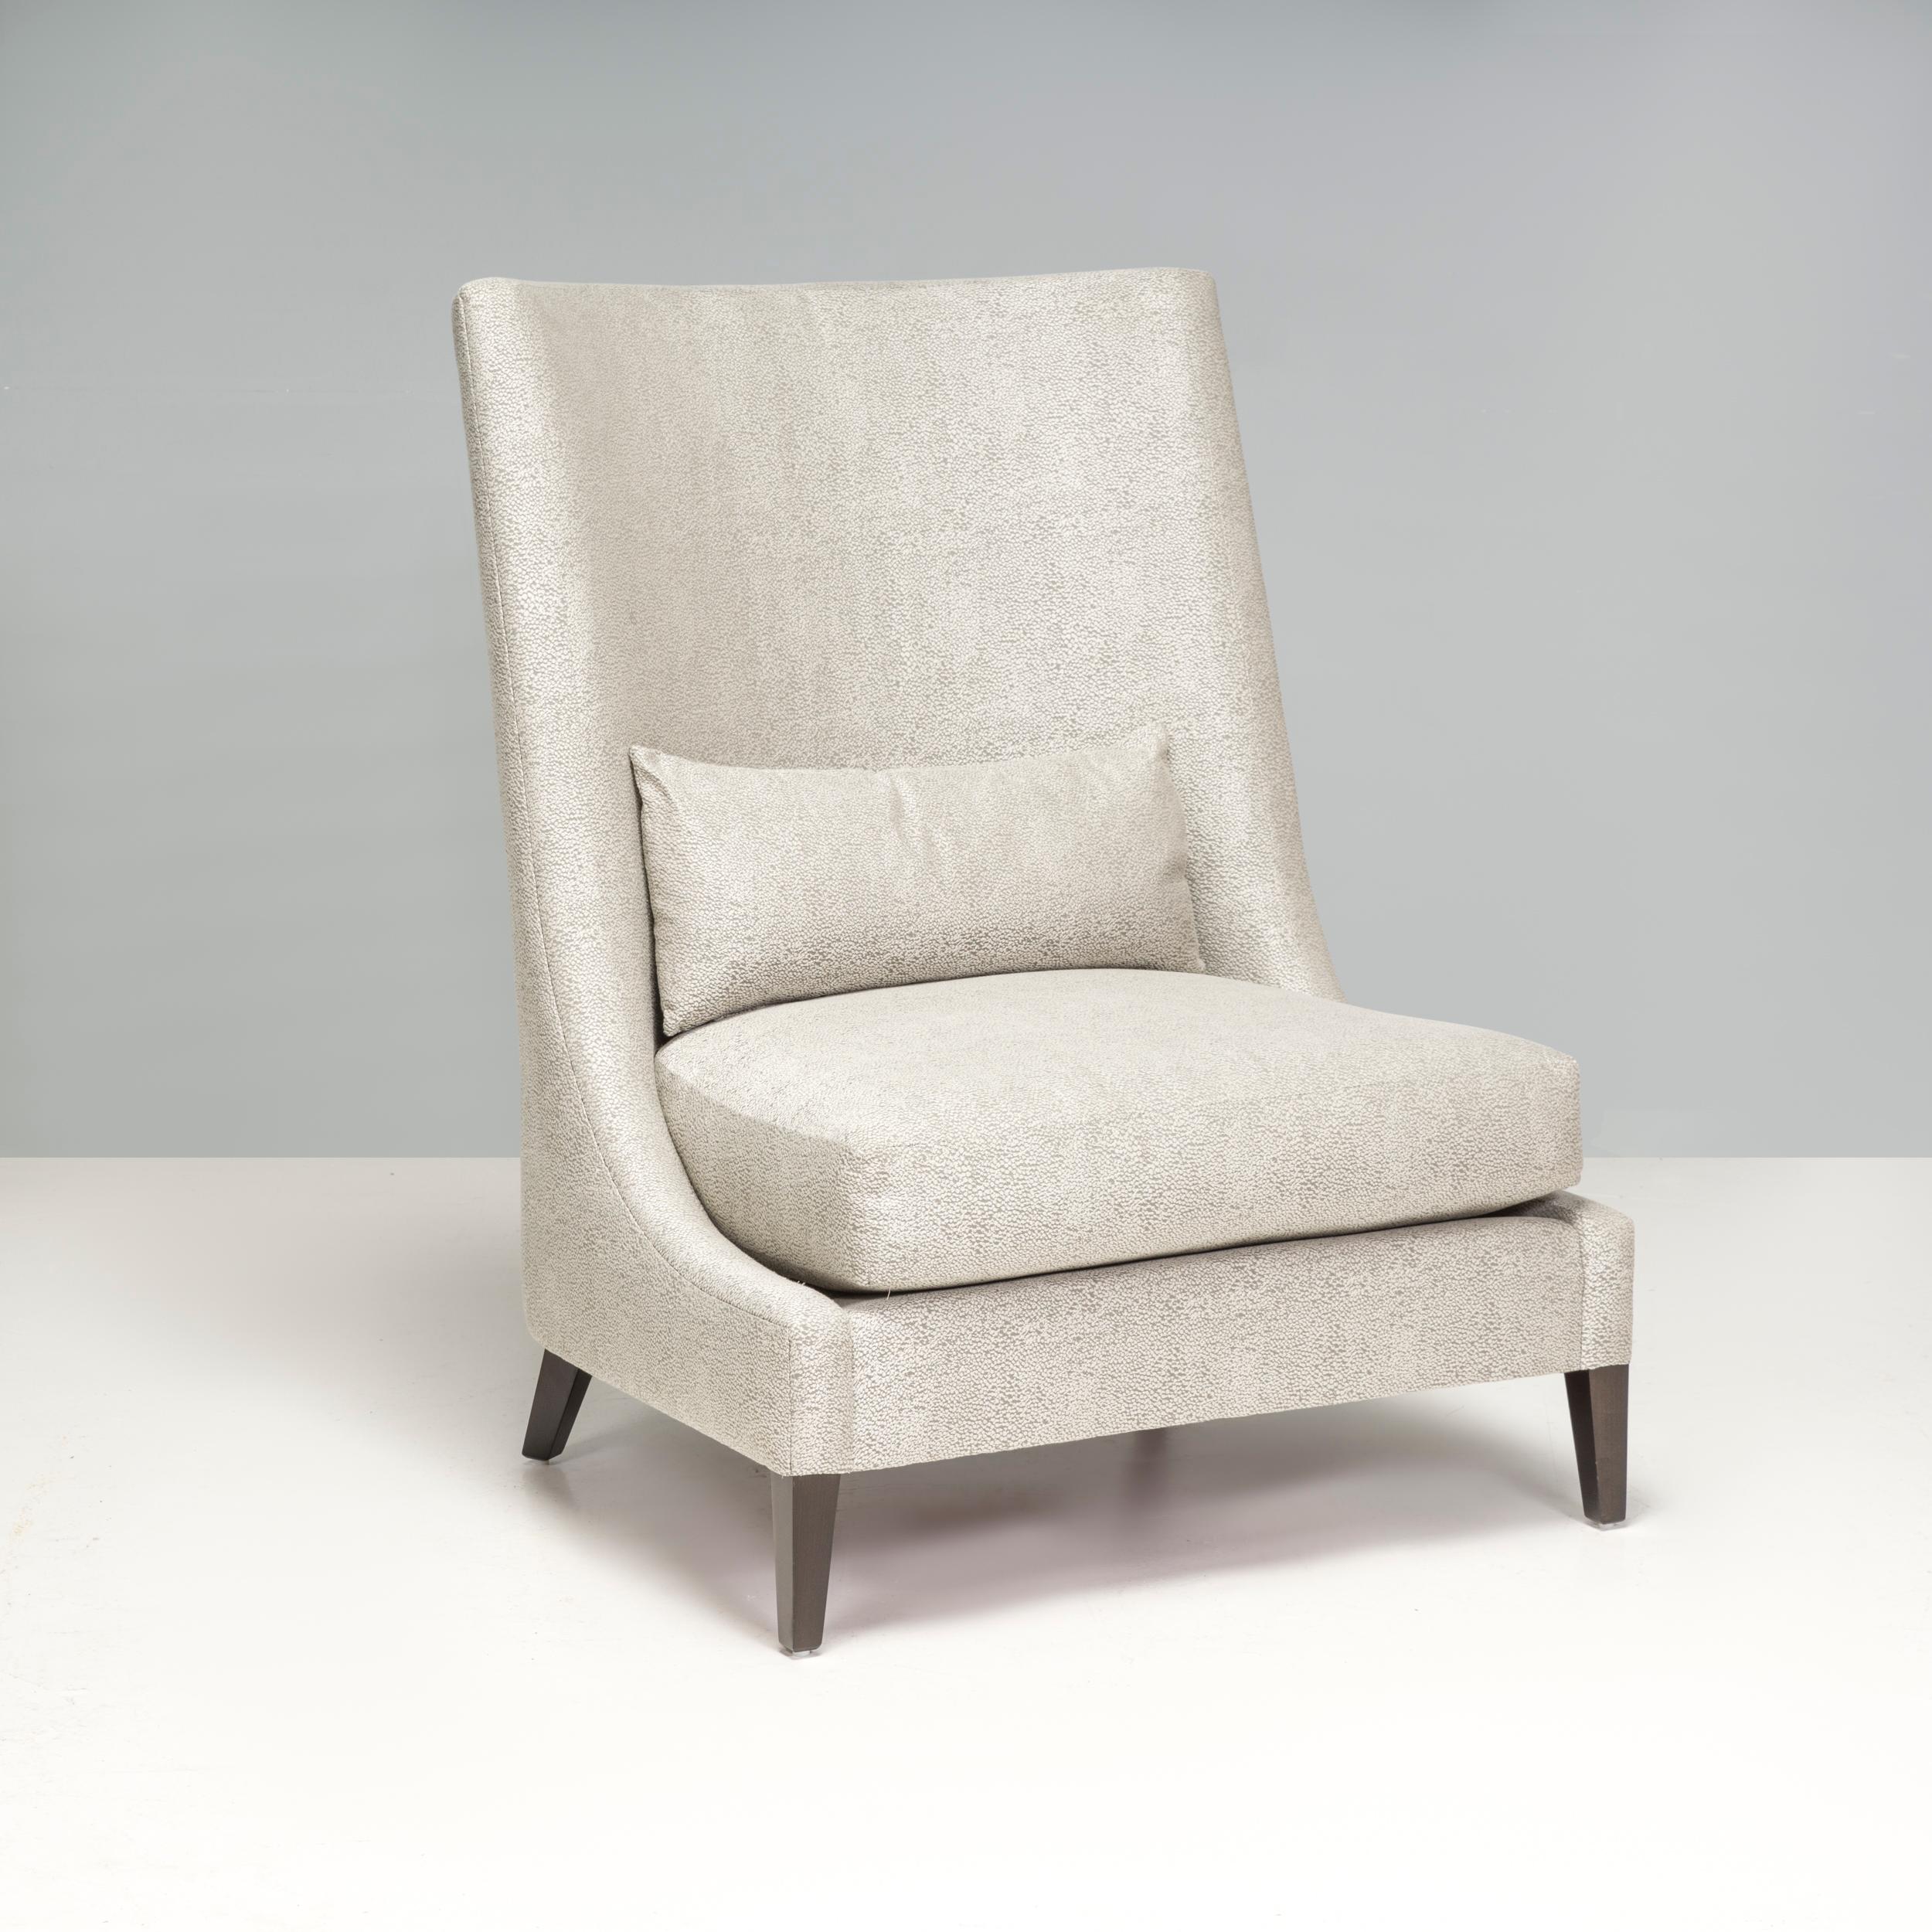 Le fauteuil gris clair à dossier haut présente un design impressionnant qui rehausserait n'importe quel espace de vie ou chambre à coucher. 

Sa palette de couleurs neutres lui permet de s'harmoniser avec un large éventail d'intérieurs. Le dossier